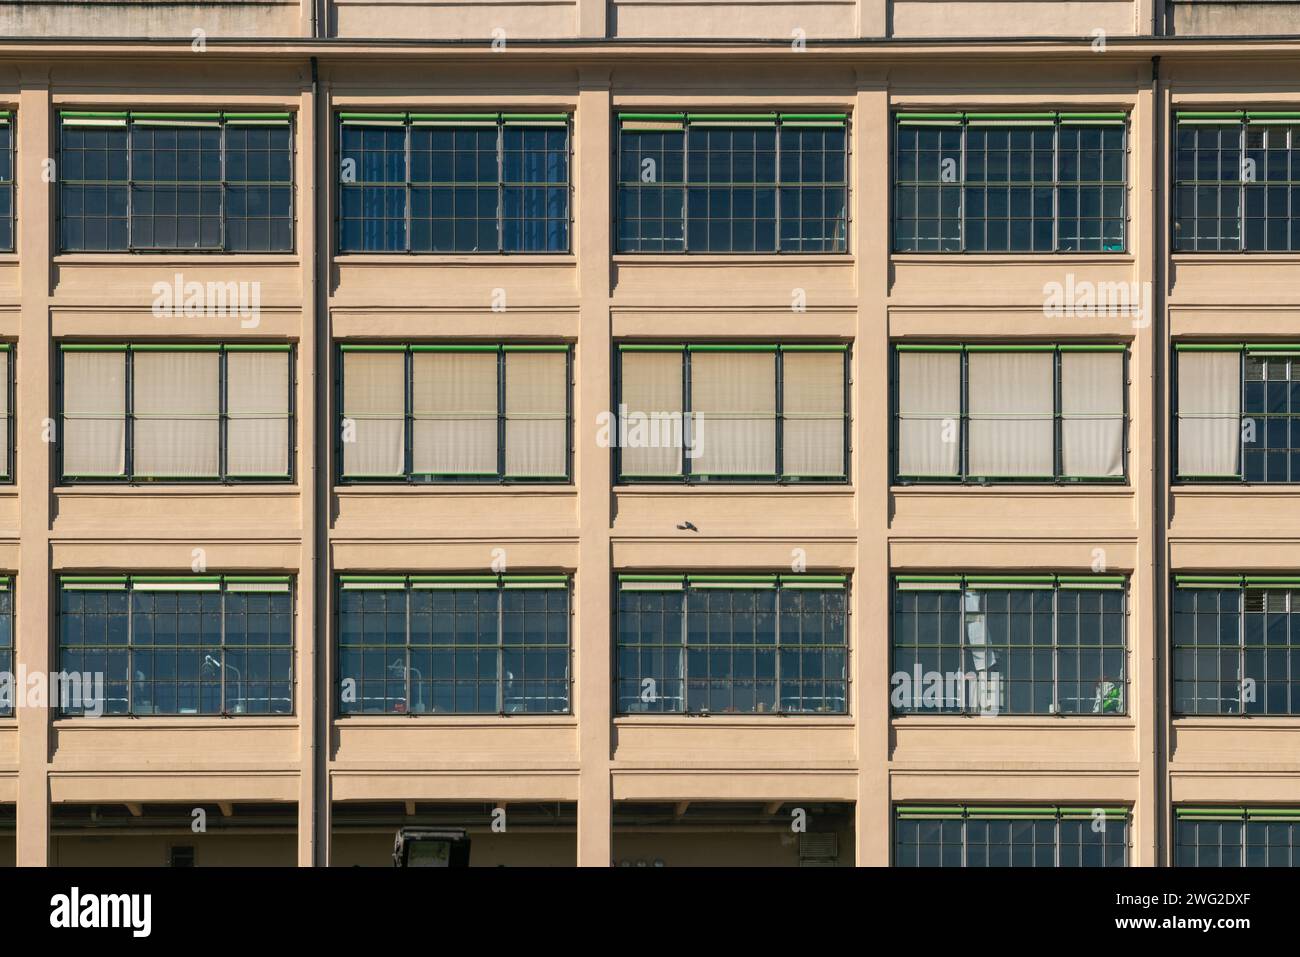 edificio post-industriale riqualificato con spazi multifunzionali, struttura in cemento armato e finestre e tende esterne a doppi vetri. Foto Stock